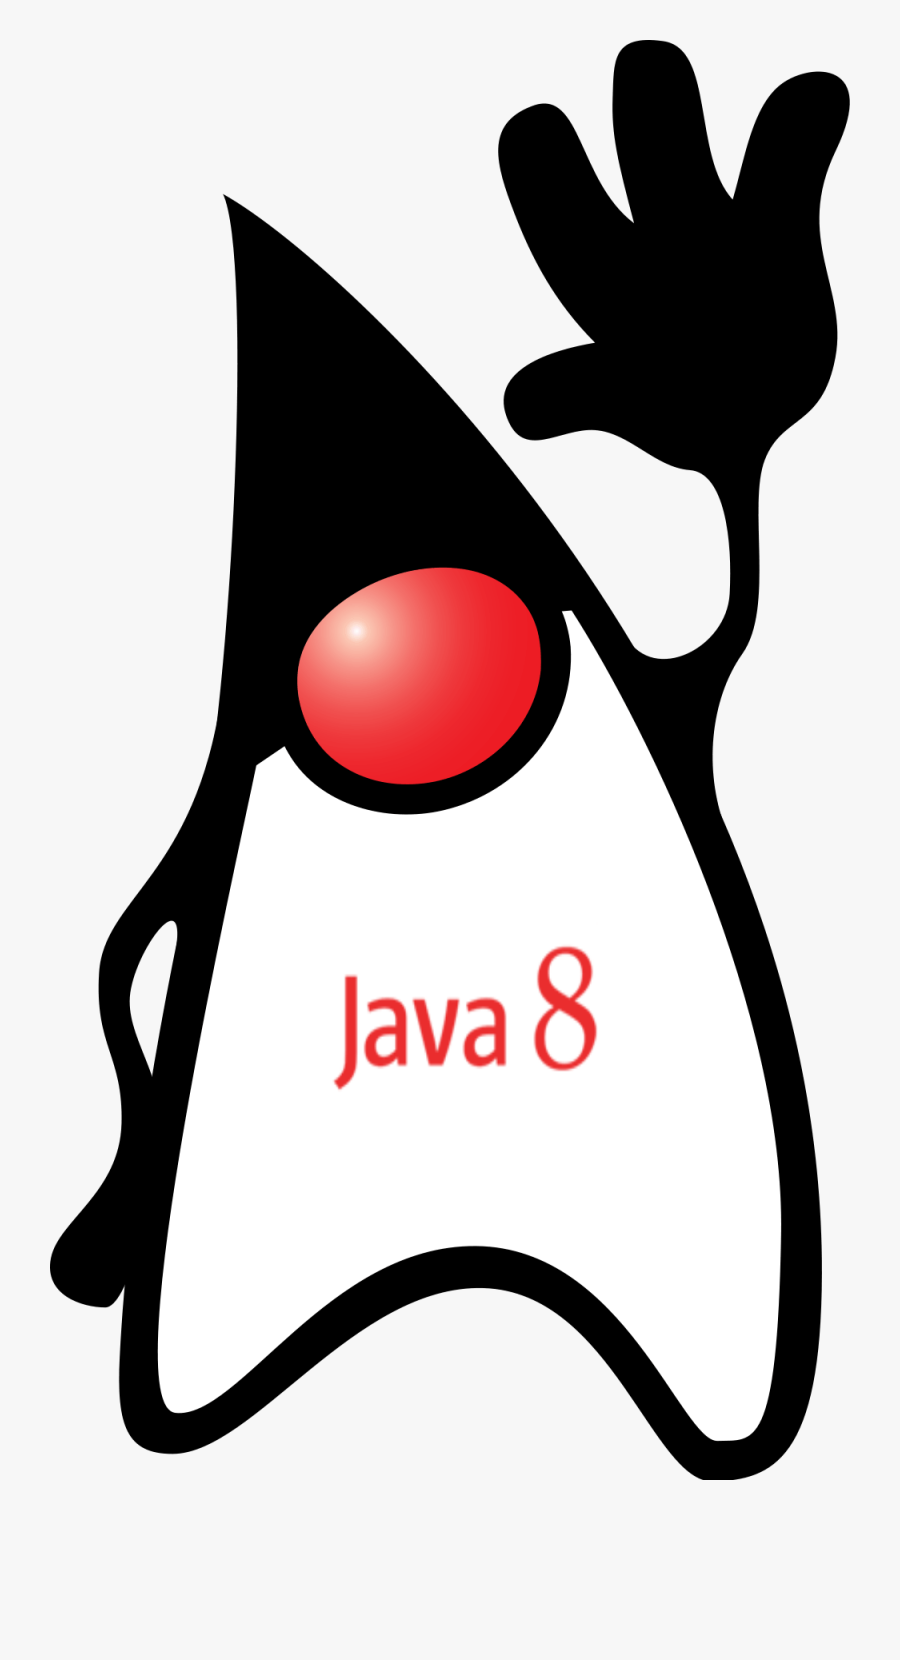 Java8 - Java Mascot, Transparent Clipart